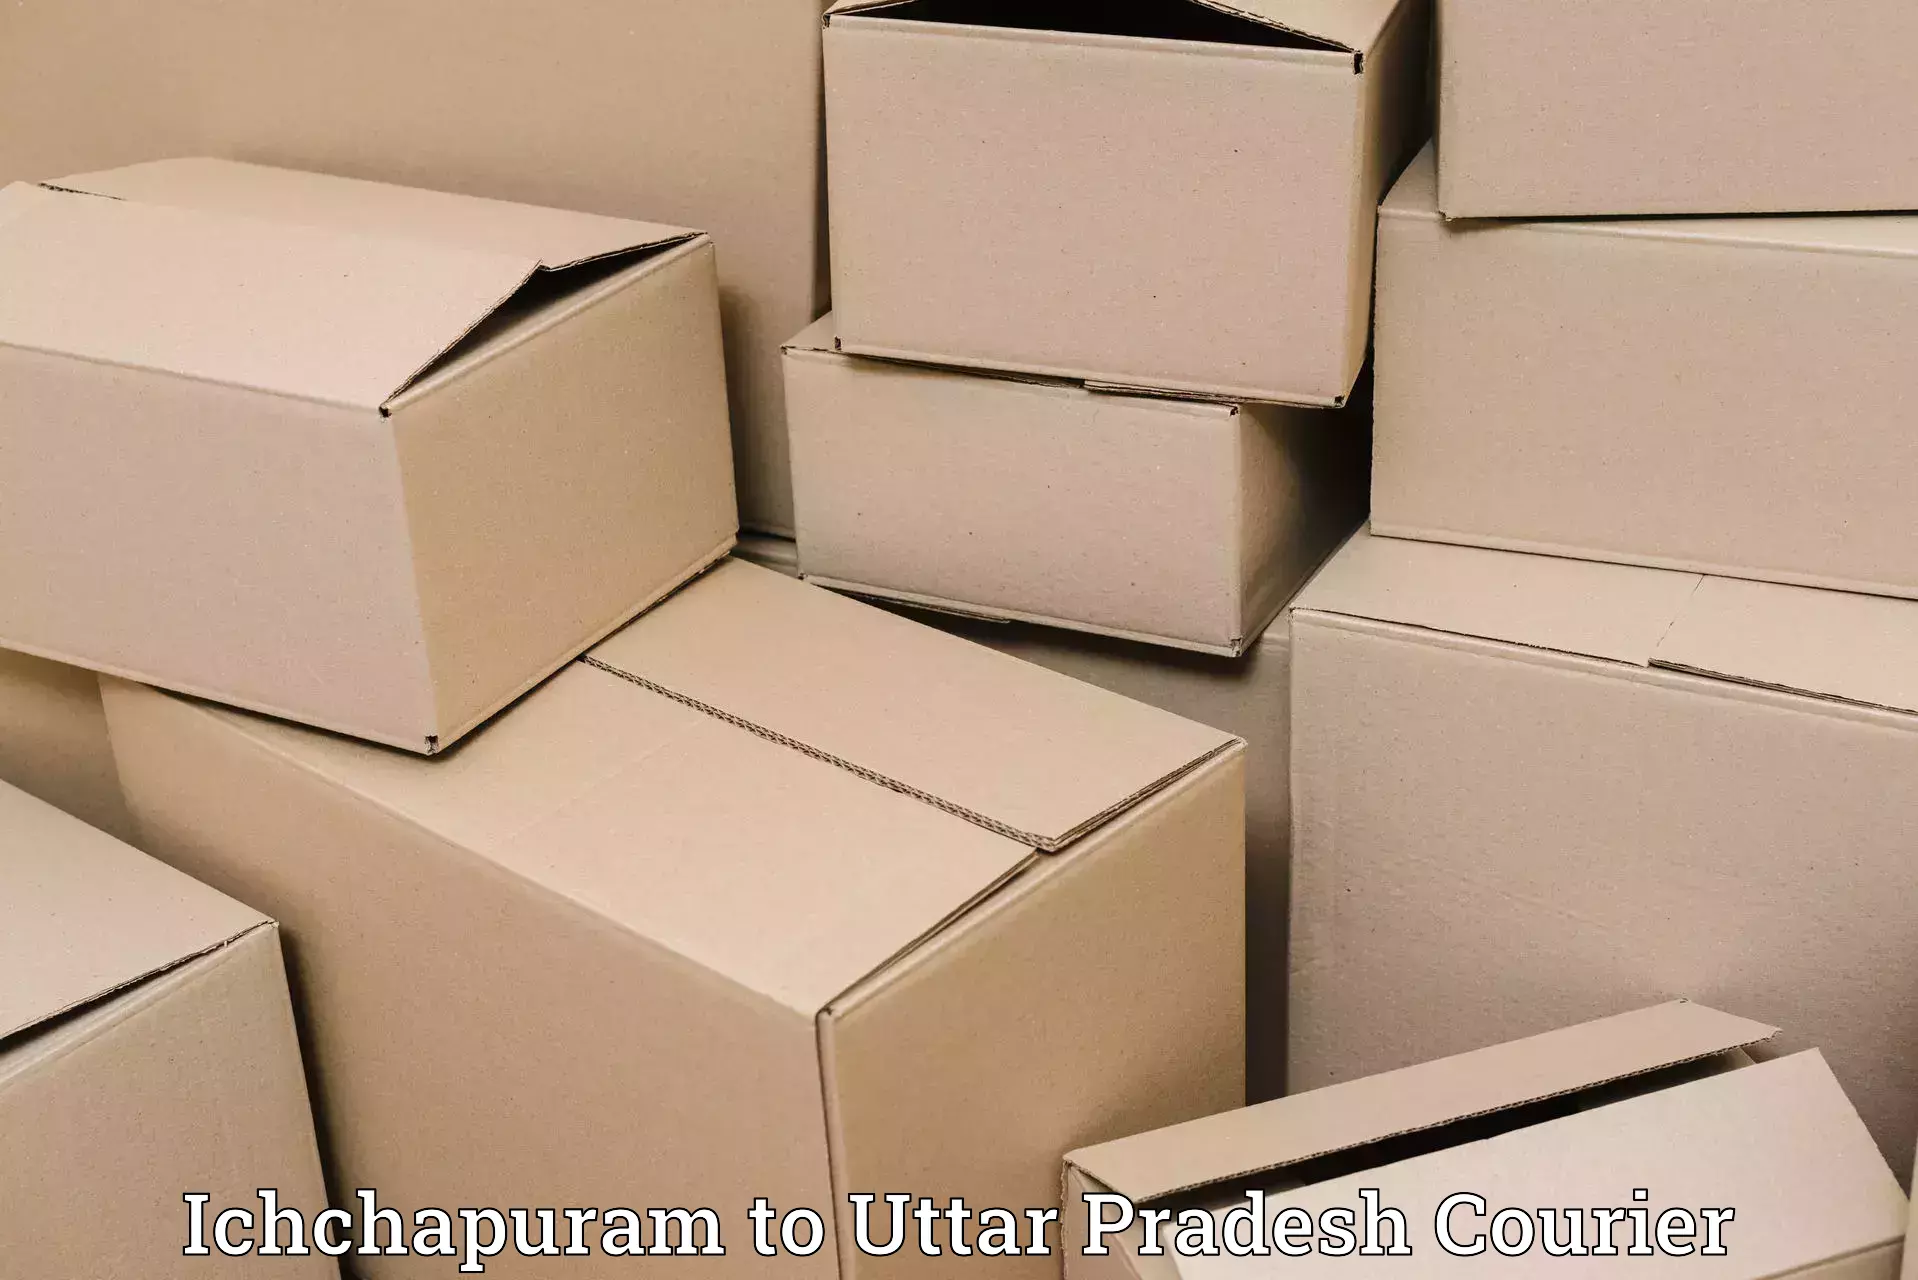 Courier dispatch services Ichchapuram to Phephna